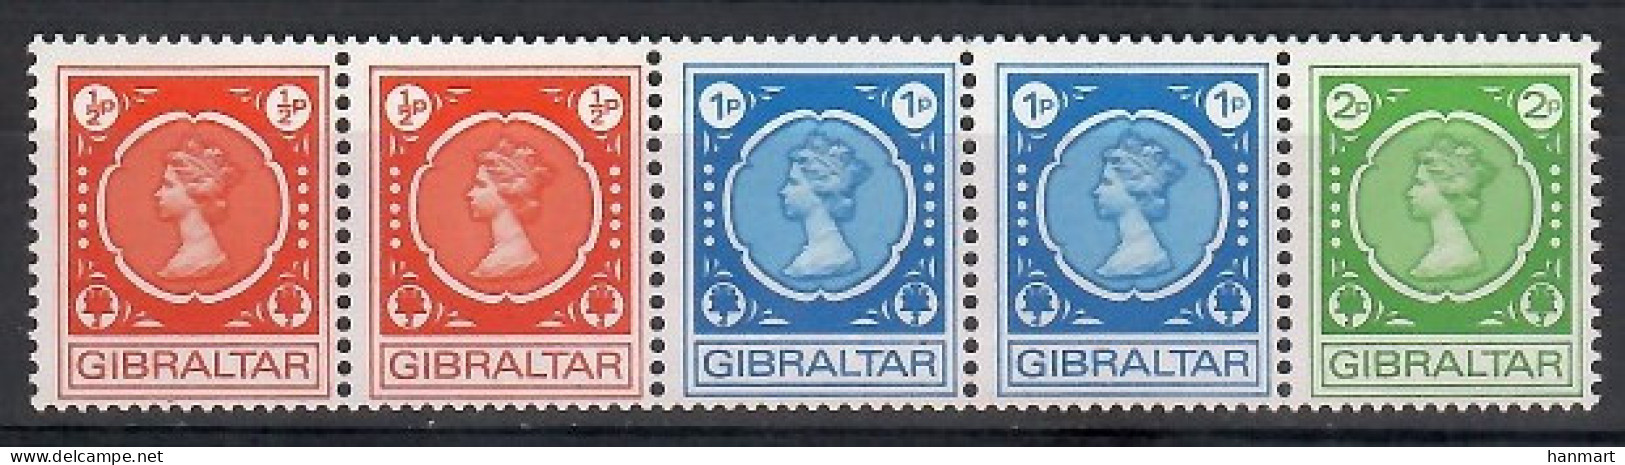 Gibraltar 1971 Mi 276-278 MNH  (ZE1 GIBfun276-278) - Royalties, Royals